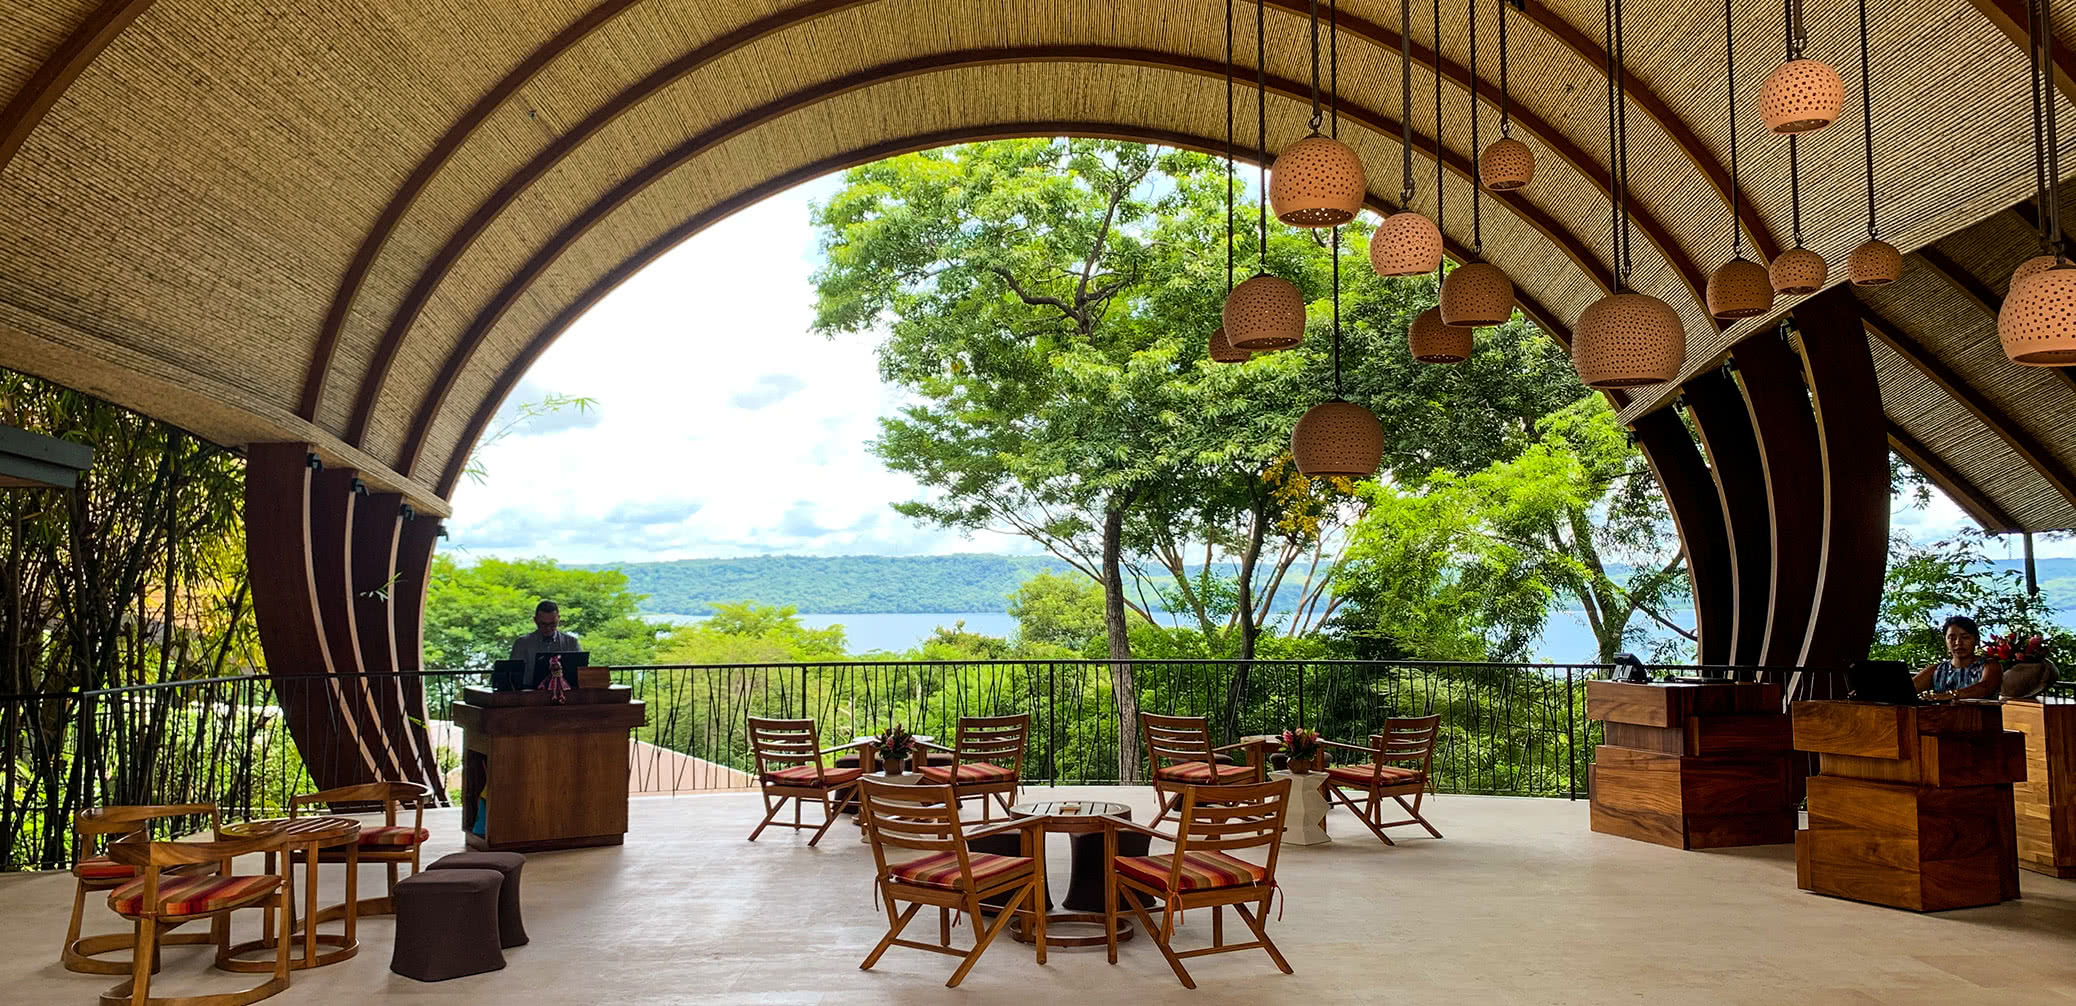 Review: Andaz Costa Rica Resort At Peninsula Papagayo